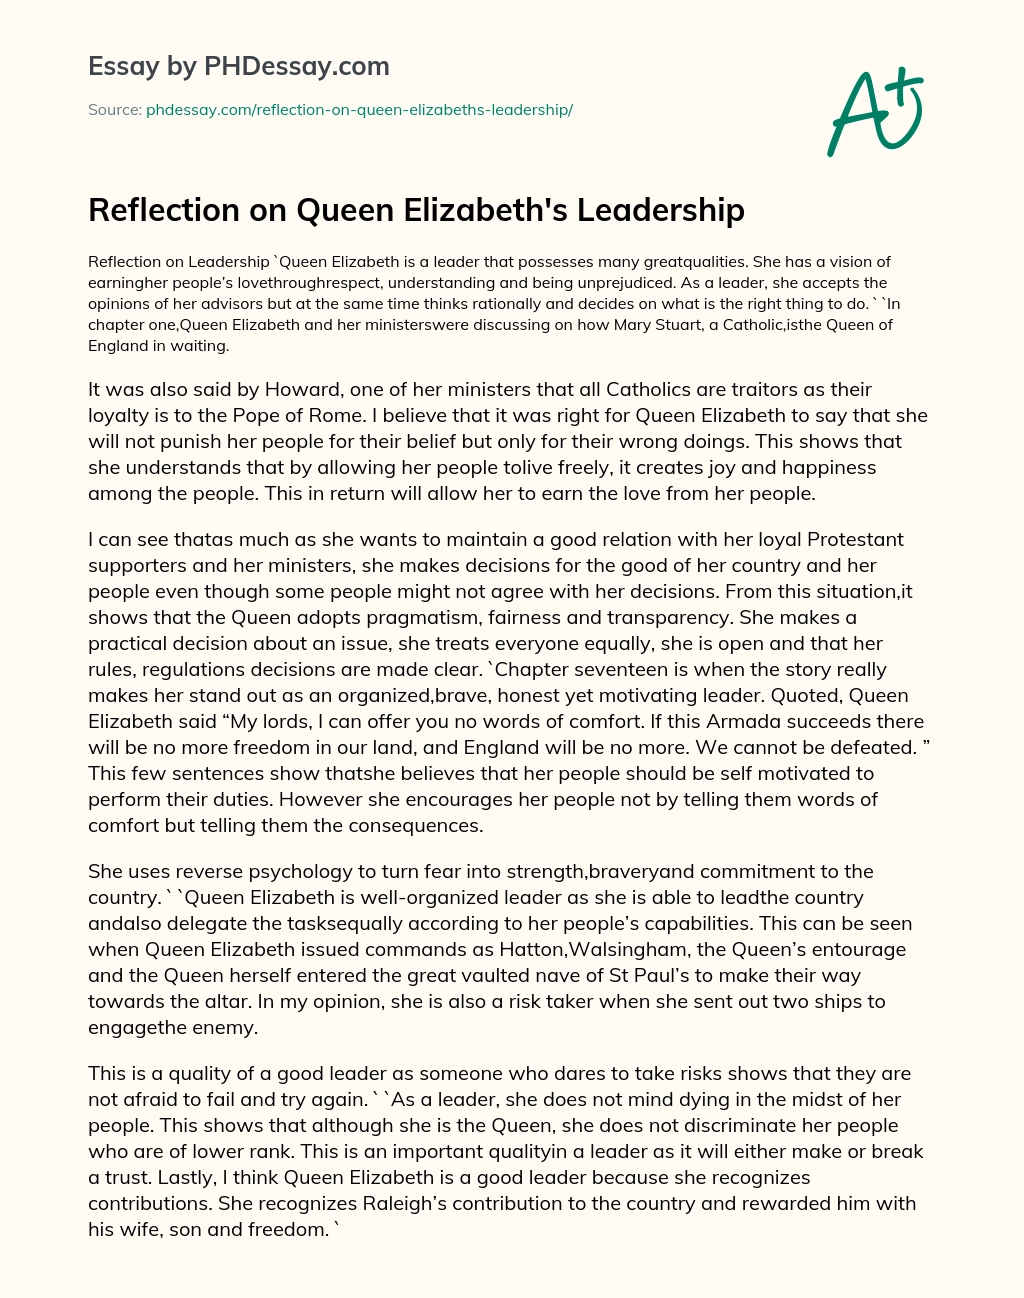 Reflection on Queen Elizabeth’s Leadership essay